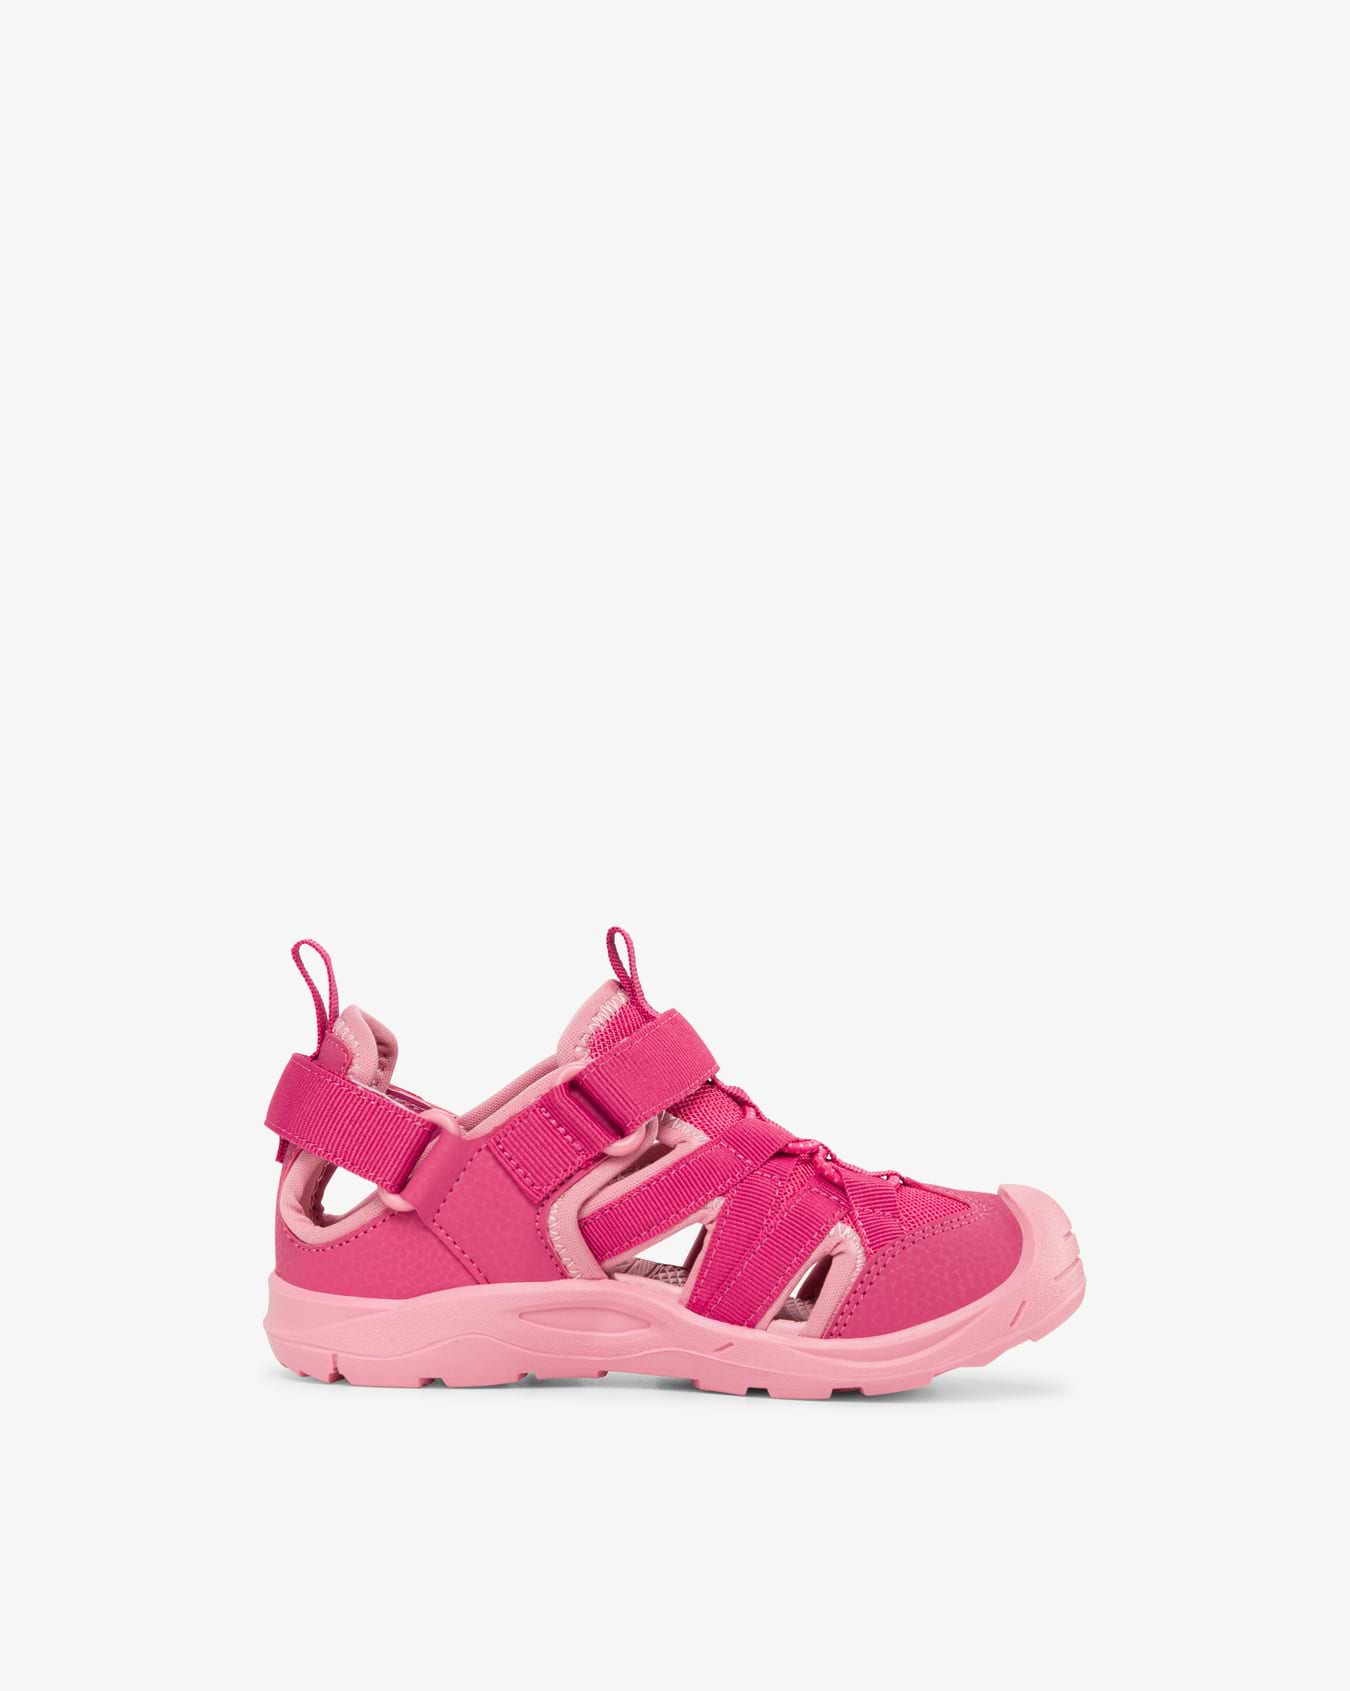 Adventure Sandal 2V Pink/Light Pink